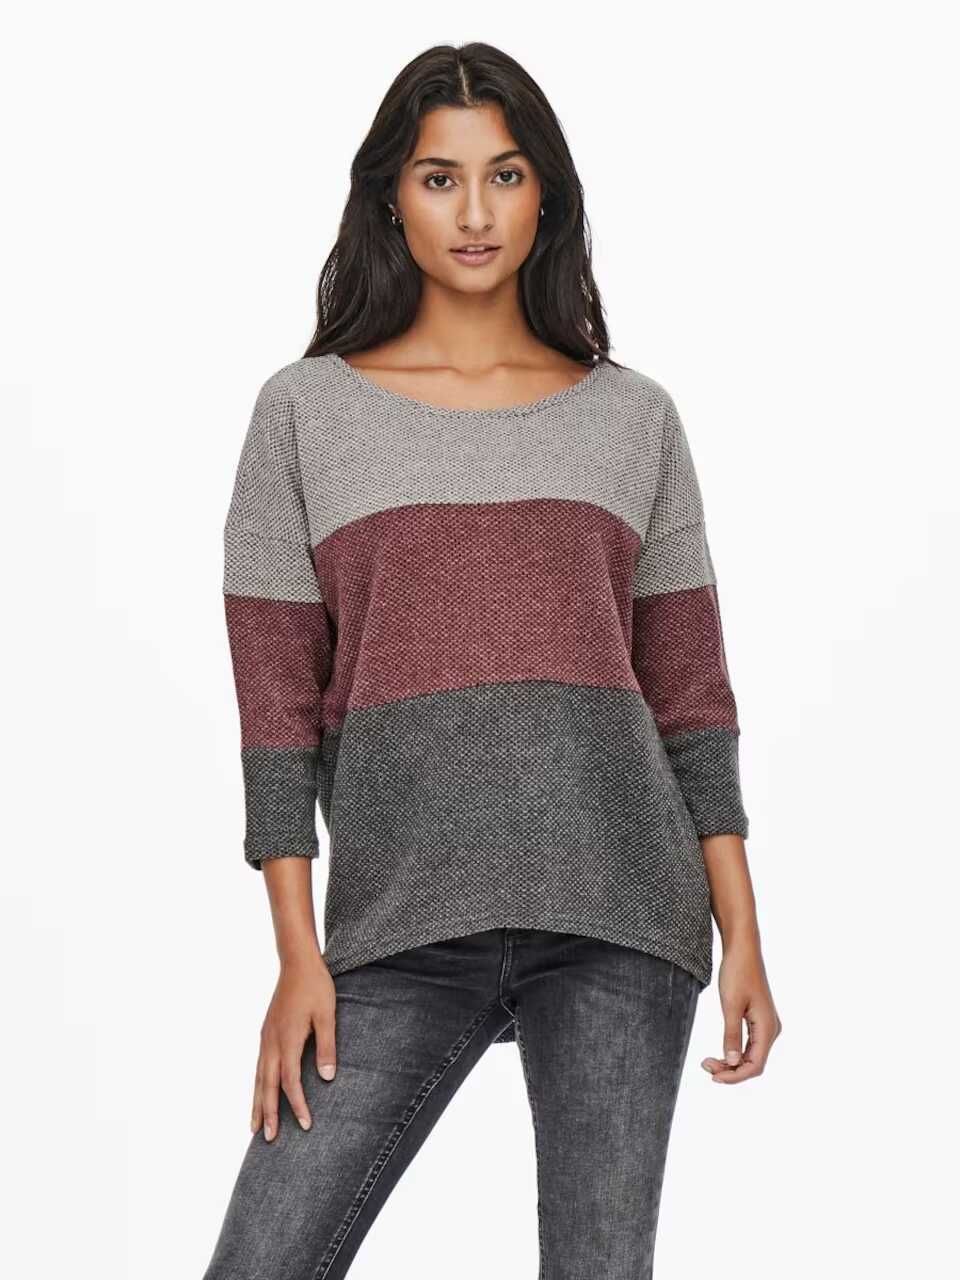 Дамски пуловер с 3/4 ръкав Alba Only, 95% полиестер, 5% еластан, L